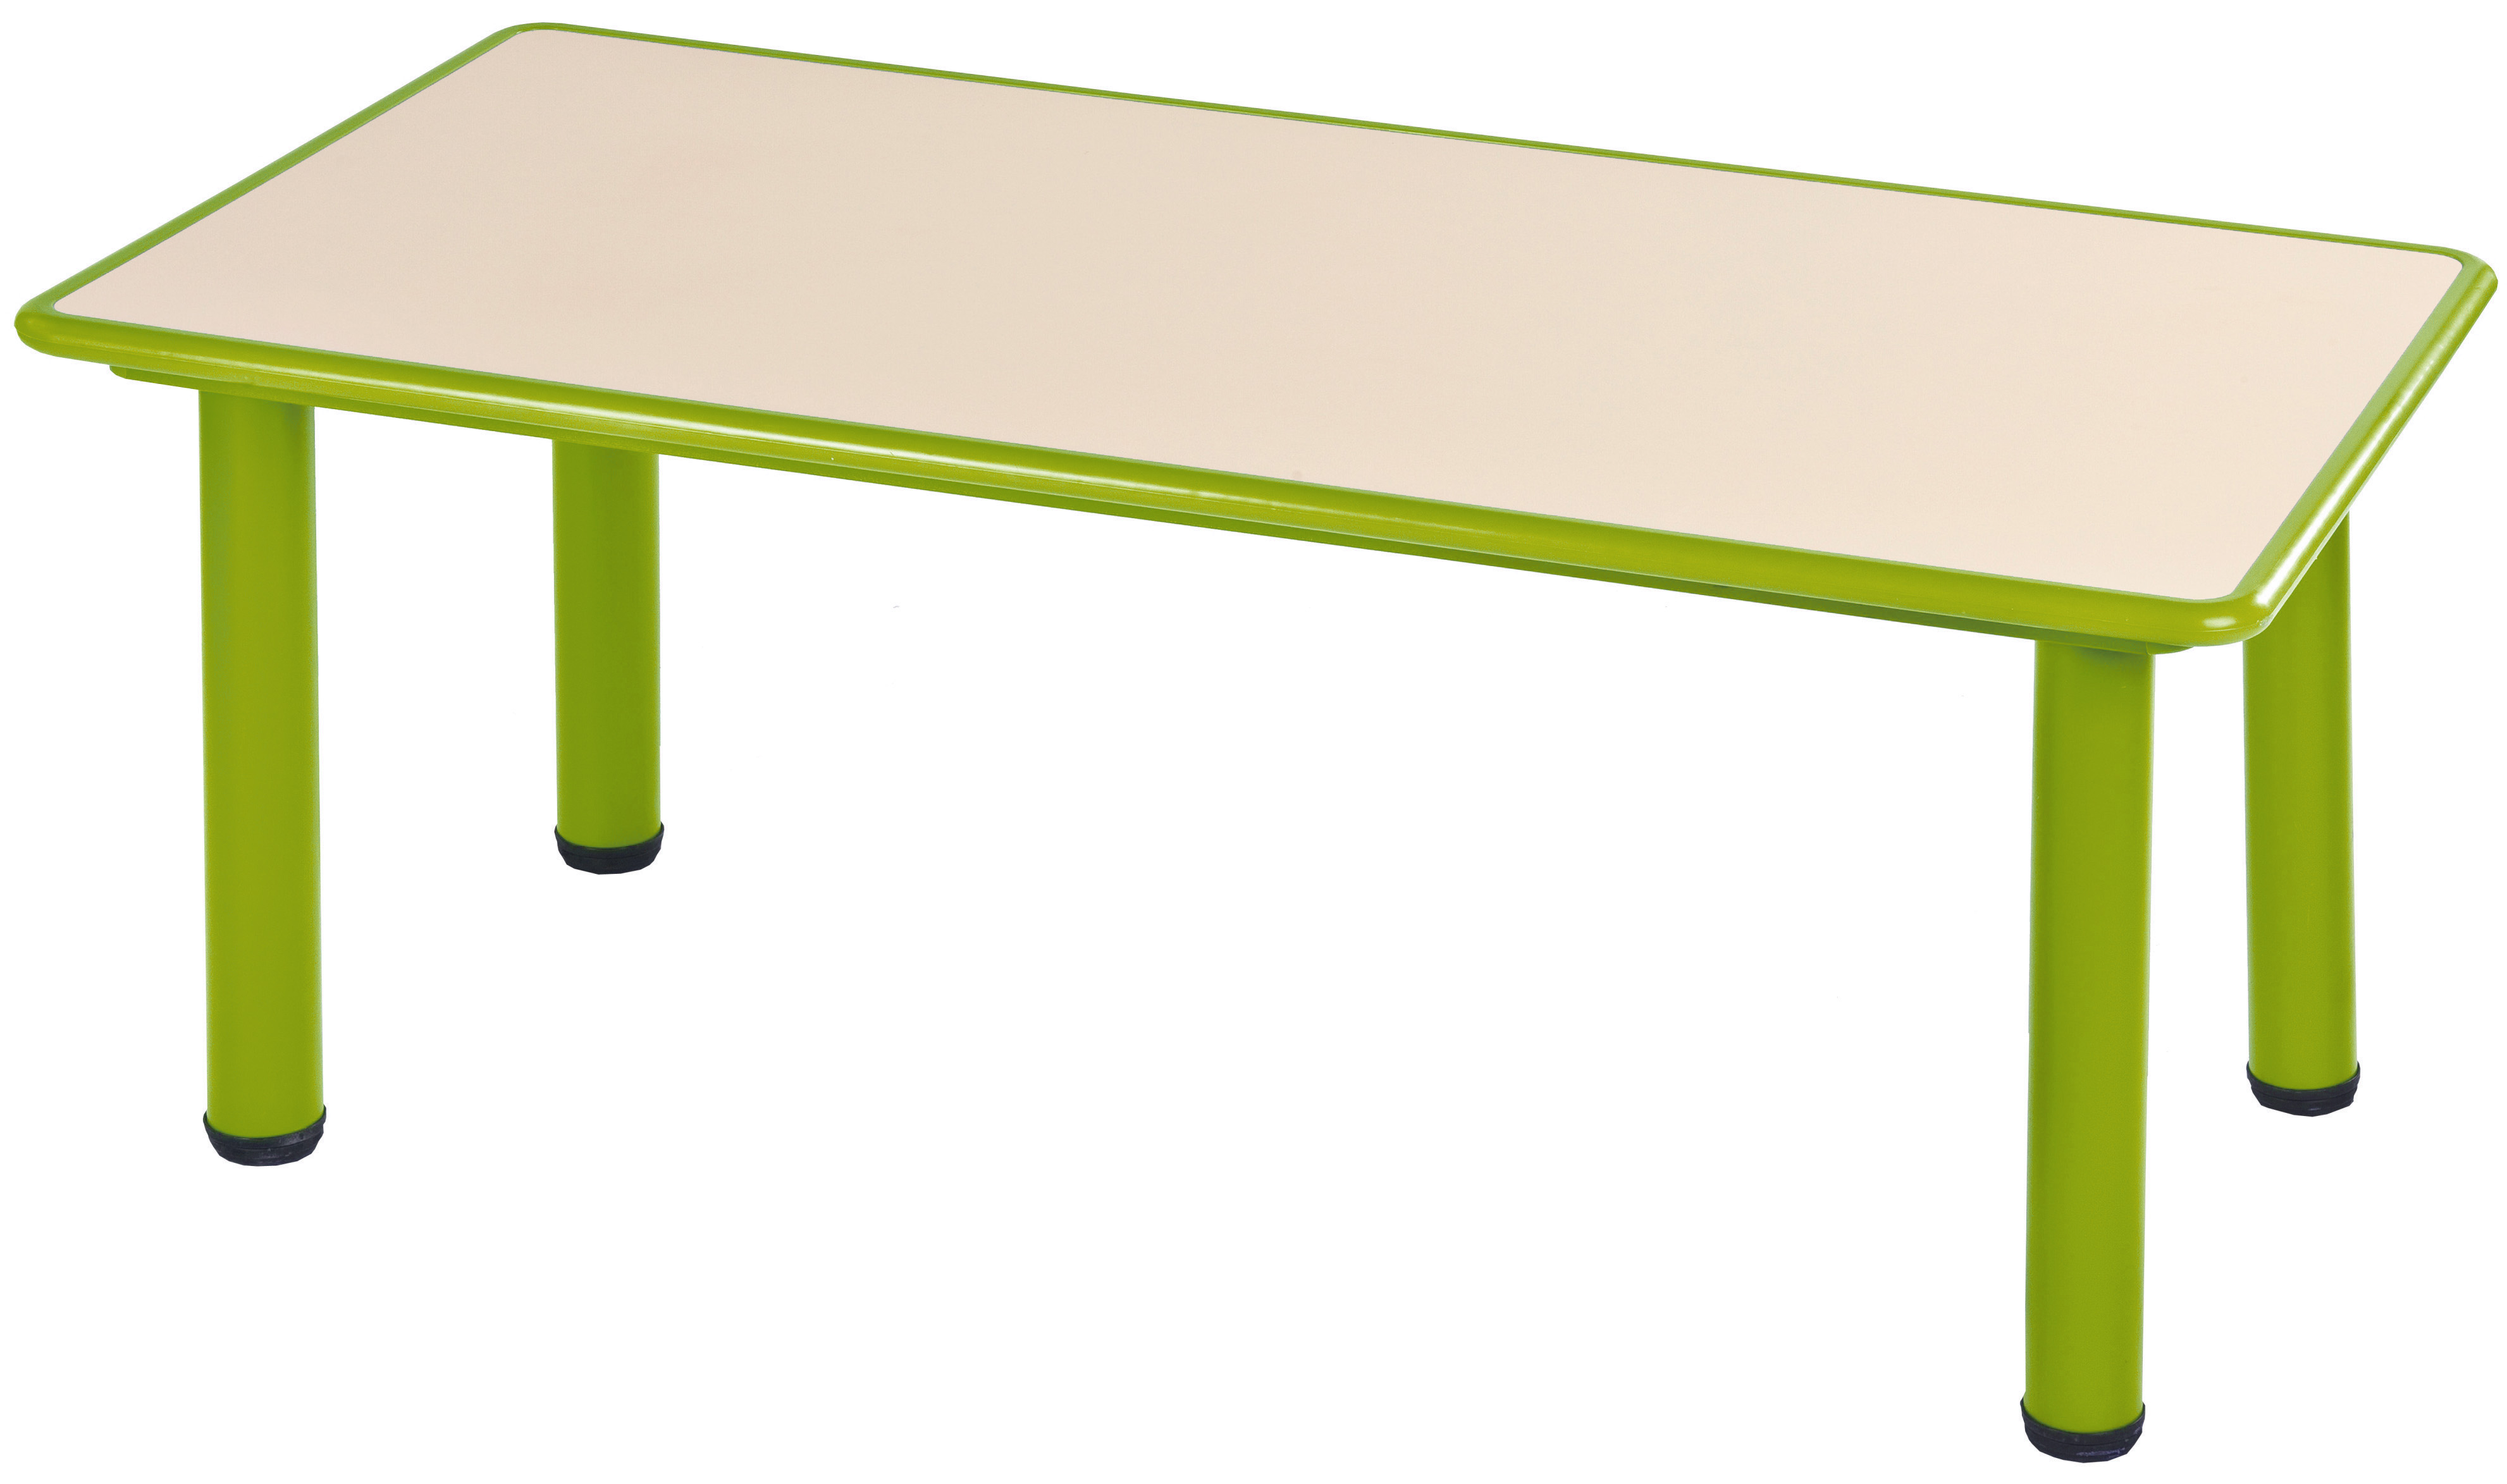 שולחן קנט פלסטיק 120*60 - ירוק ליים - תמונה מספר 1